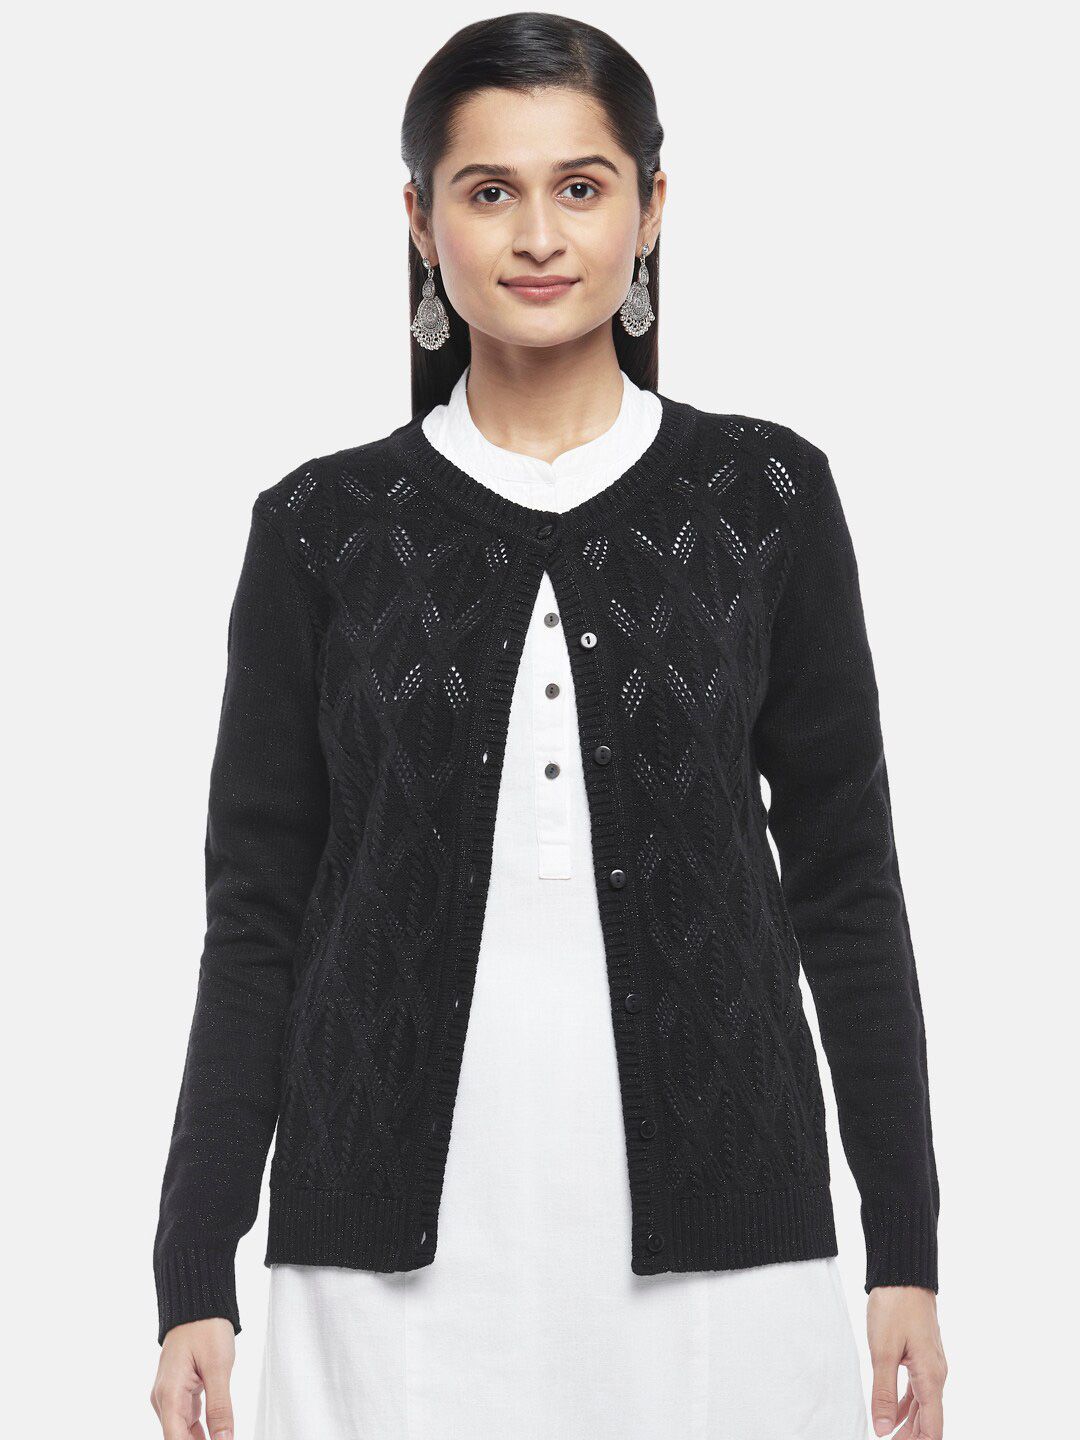 RANGMANCH BY PANTALOONS Women Black Cardigan Price in India